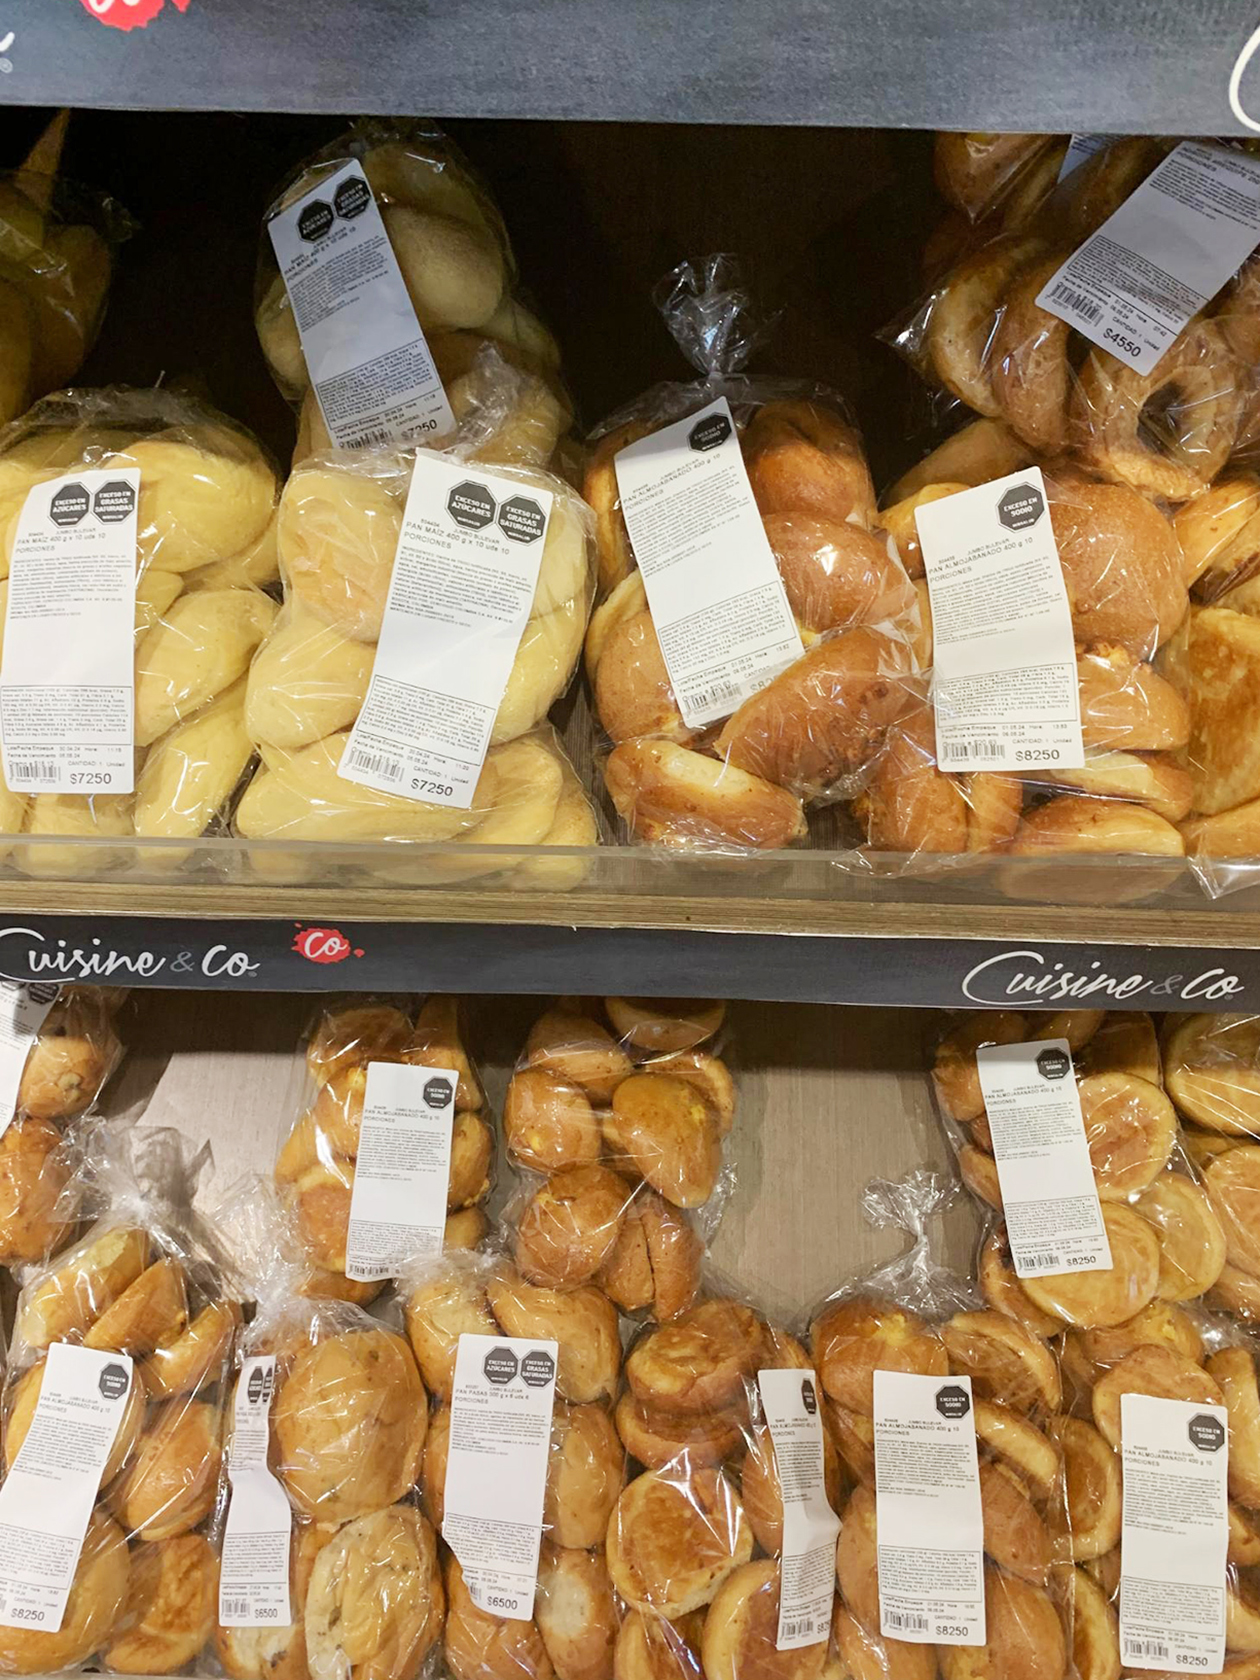 Магазинный хлеб в Колумбии очень скучный и по вкусу напоминает бумажные салфетки